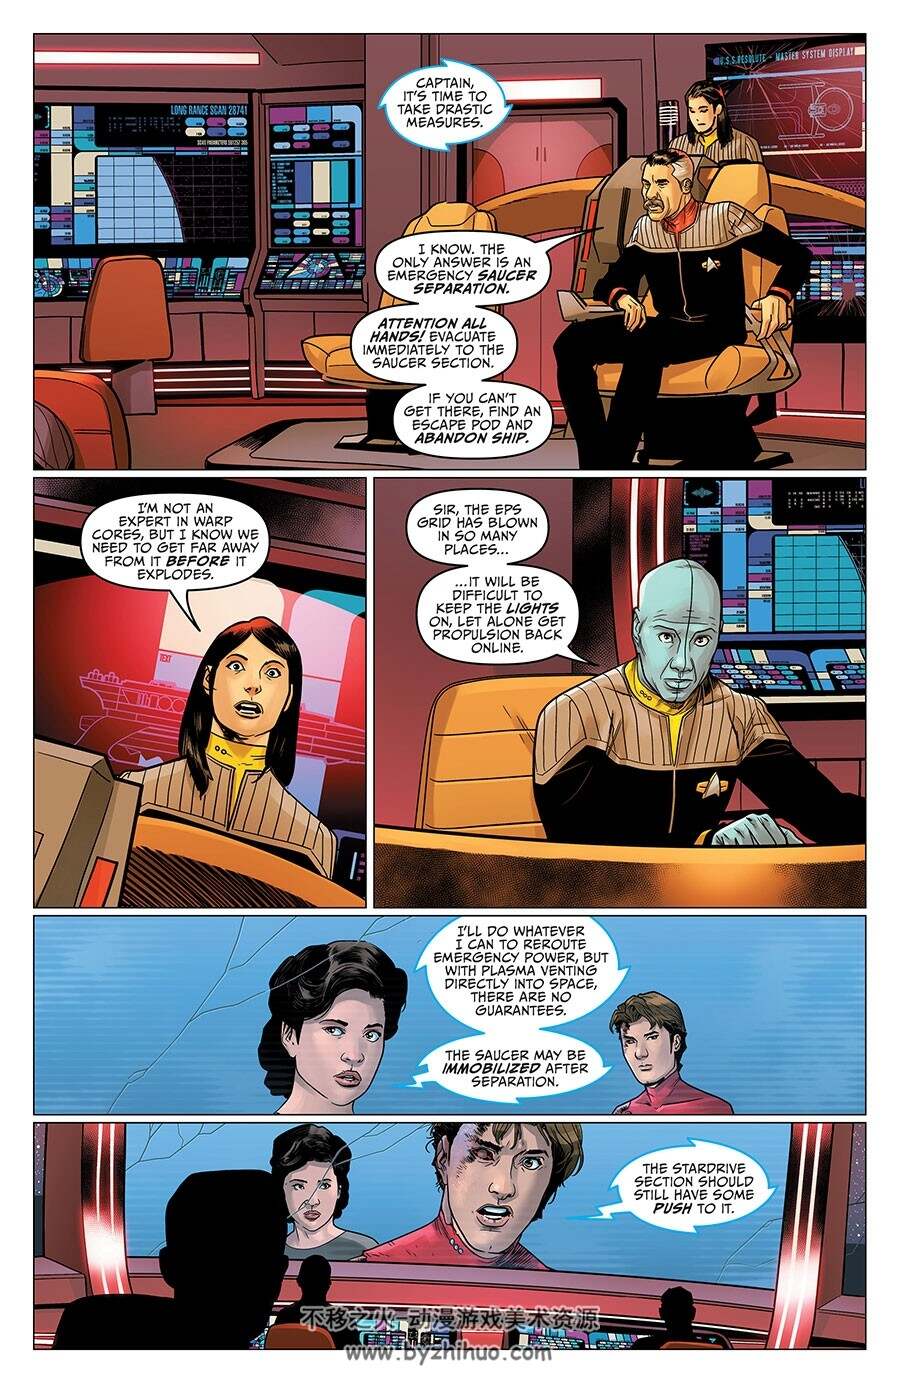 Star Trek: Resurgence 第5册 Andrew Grant 漫画下载